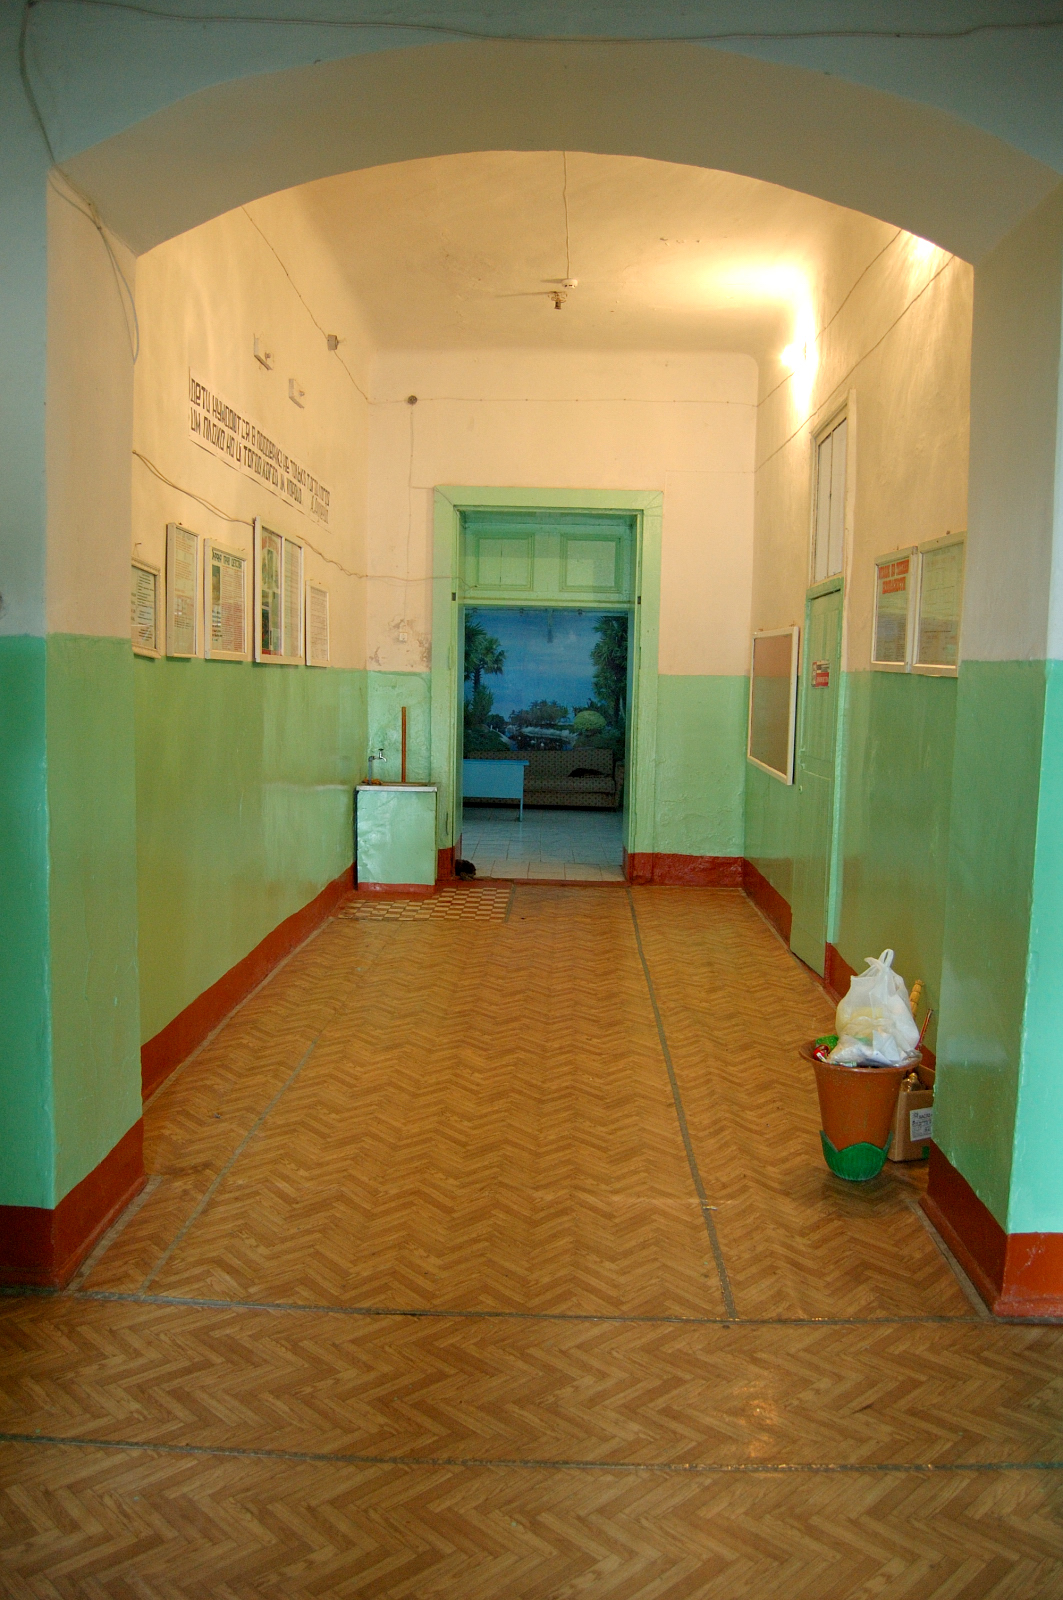 Interior of the Brunnental School in 2006. Source: Steven Schreiber.